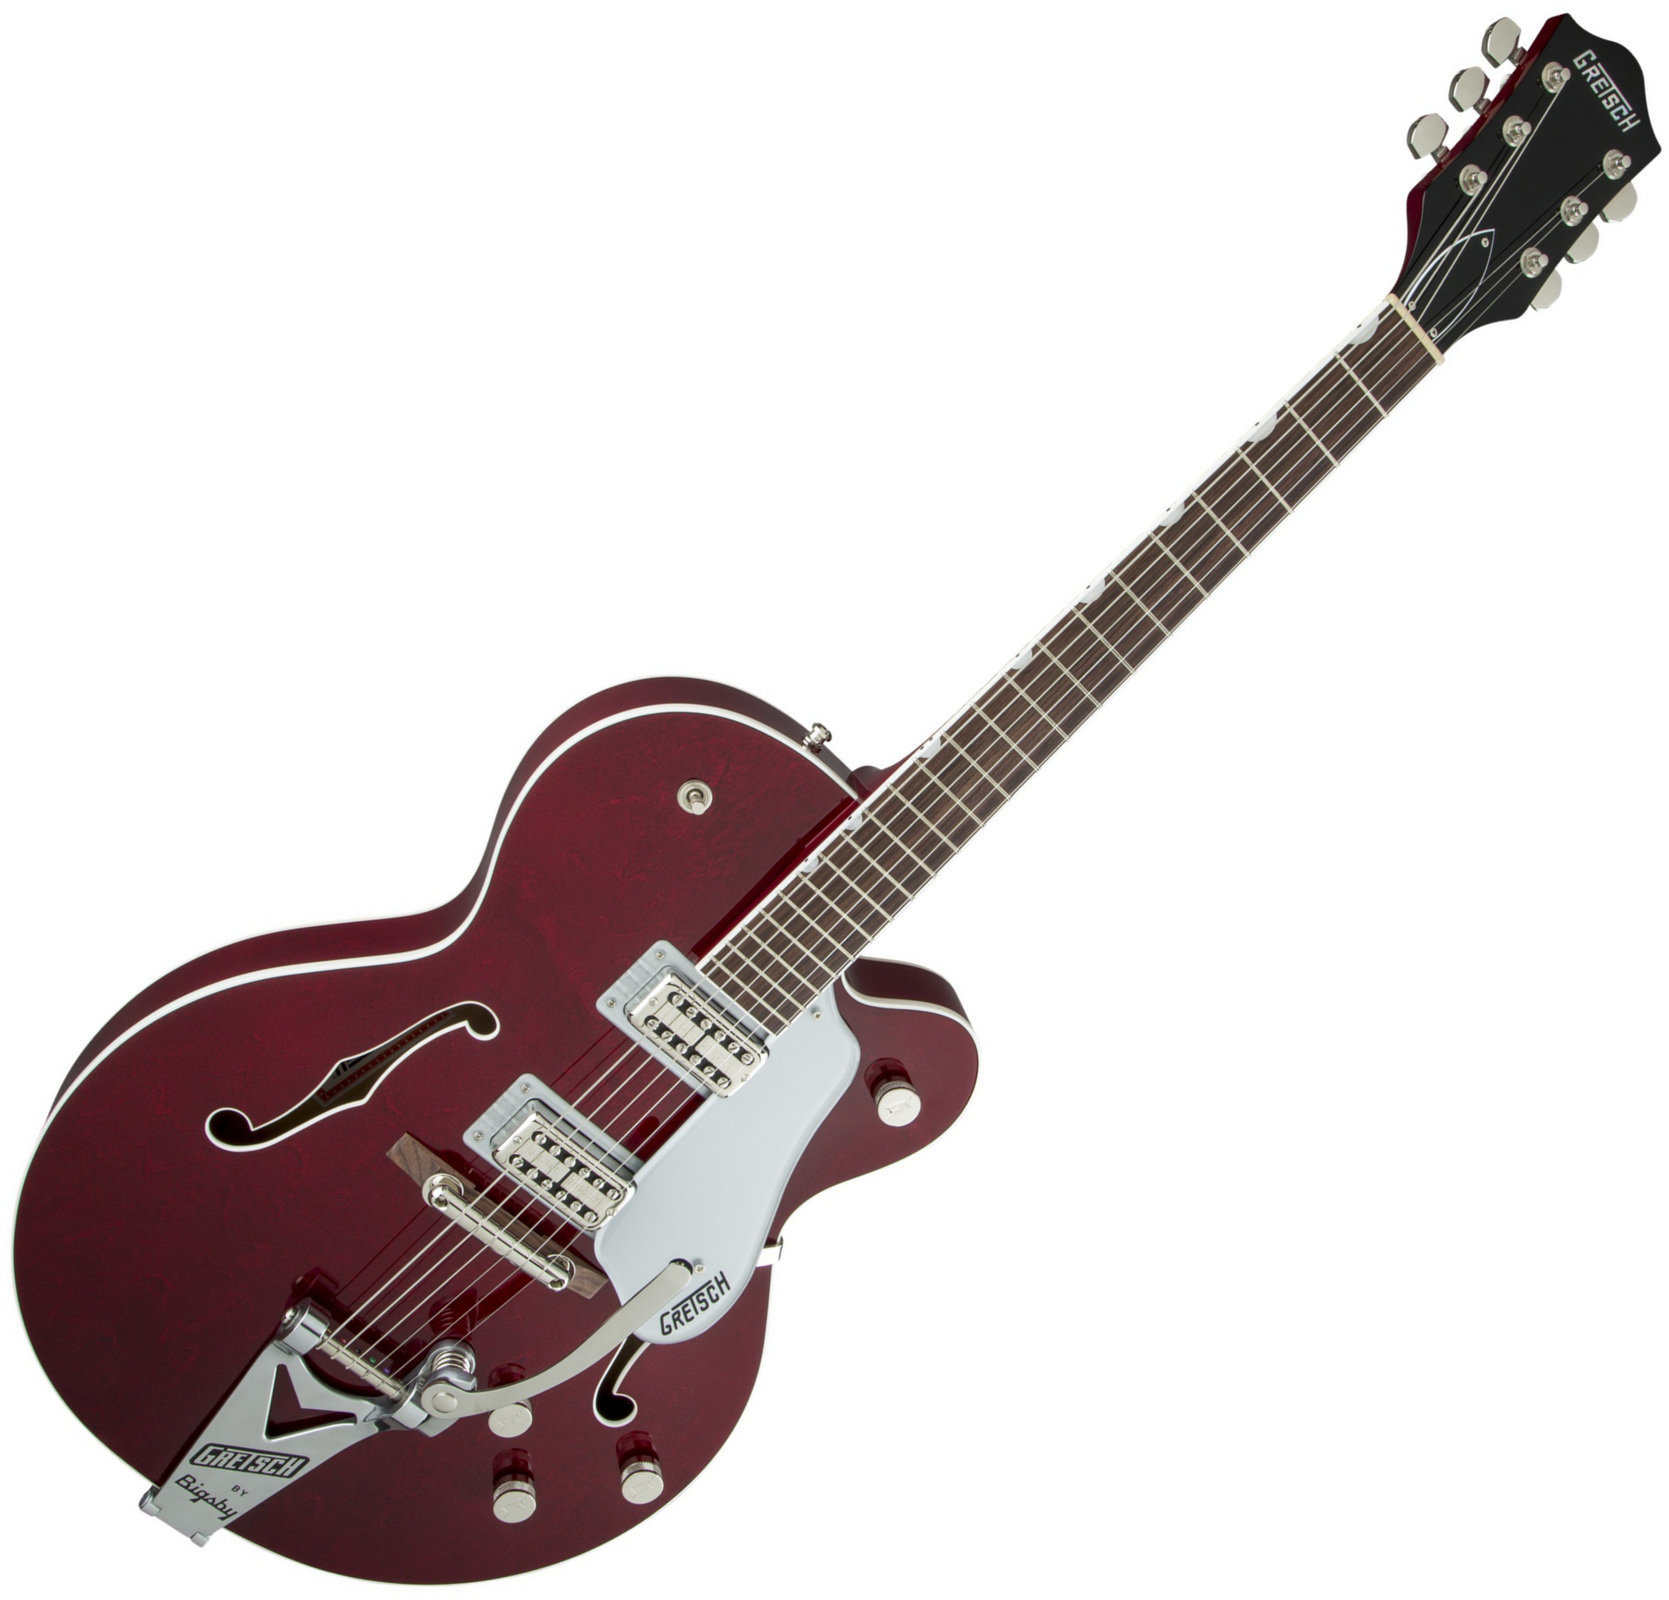 Halbresonanz-Gitarre Gretsch G6119 Professional Players Edition Tennessee Rose RW Dark Cherry Stain